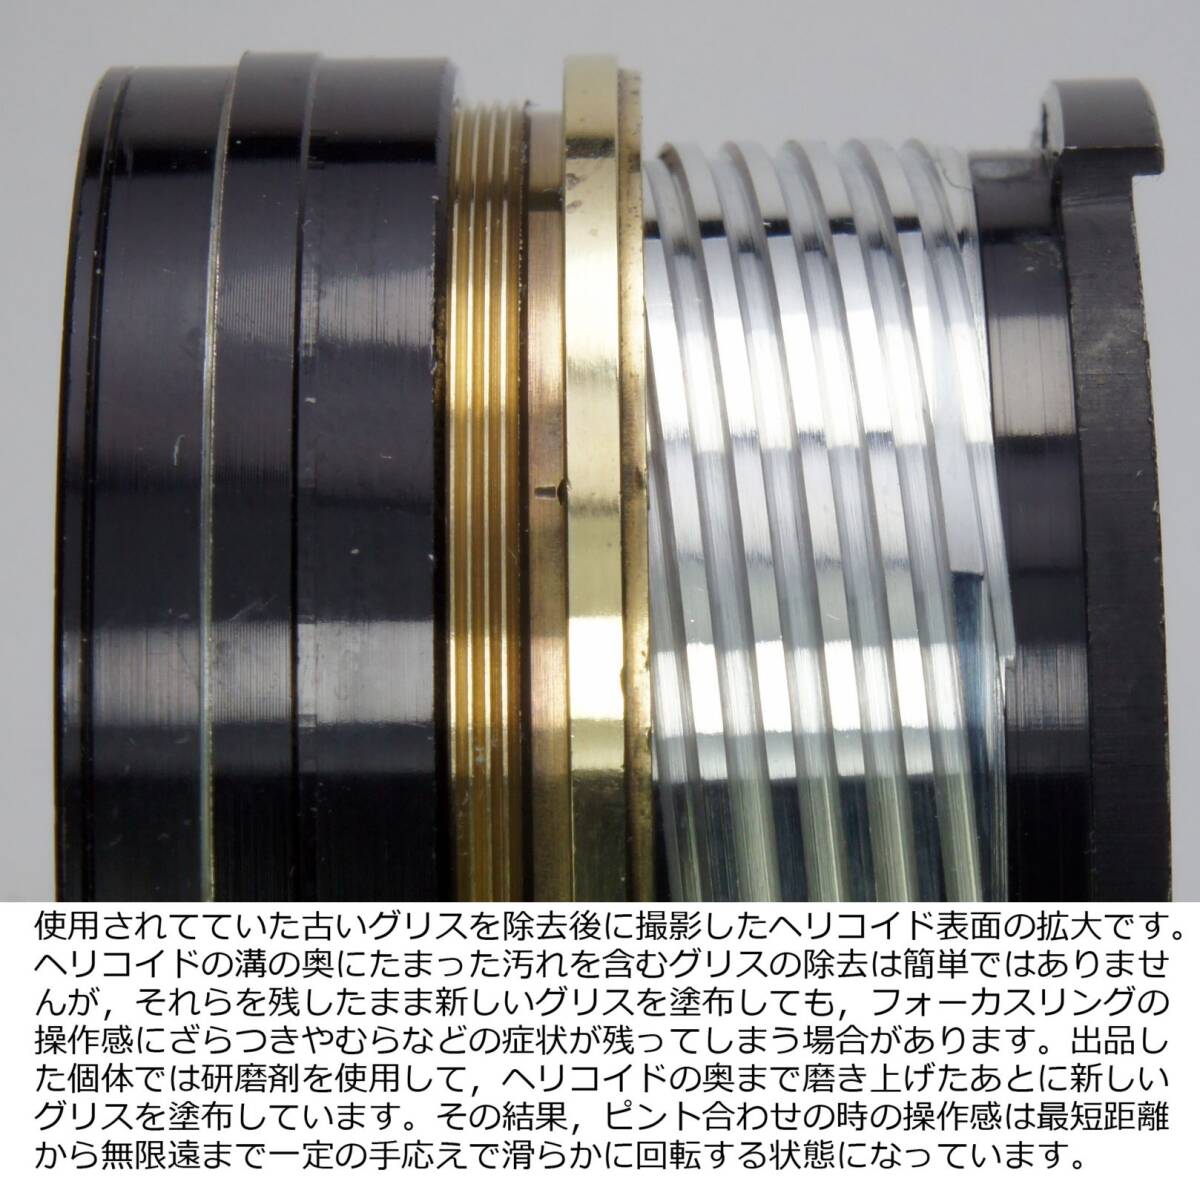 分解整備・実写確認済 Super-Takumar 55mm F1.8 オールドレンズビギナーにお勧め カラフルなゴーストやふわとろ描写が楽しめます_画像6